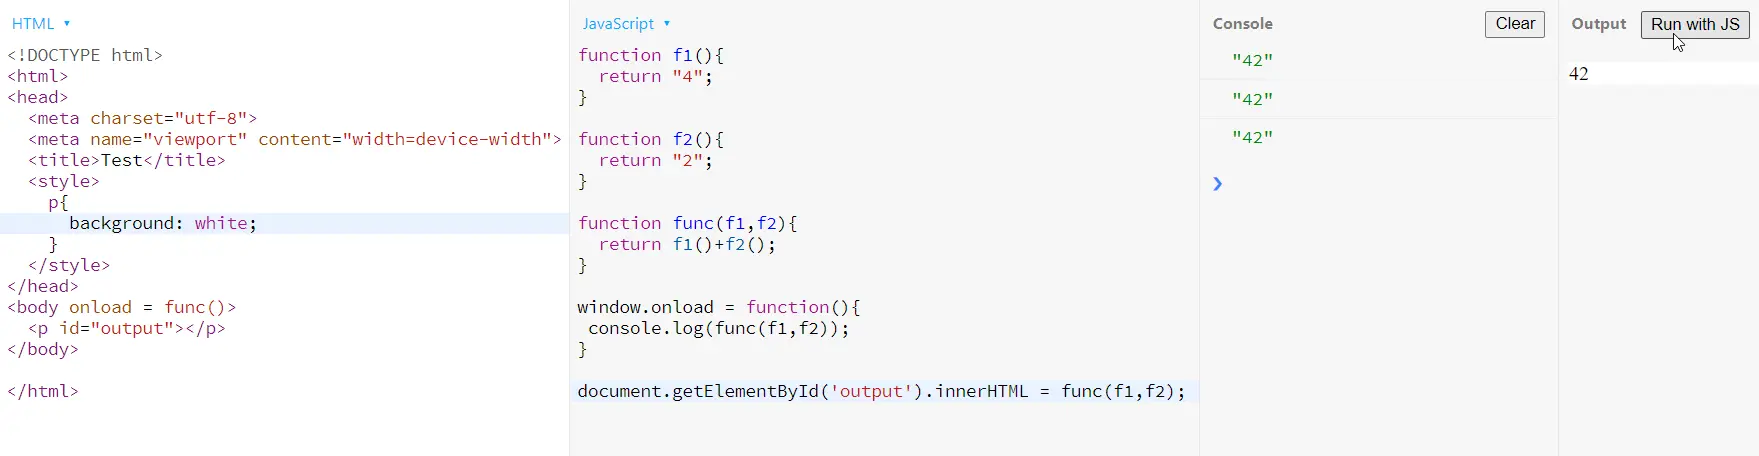 función onload js con función parámetro función